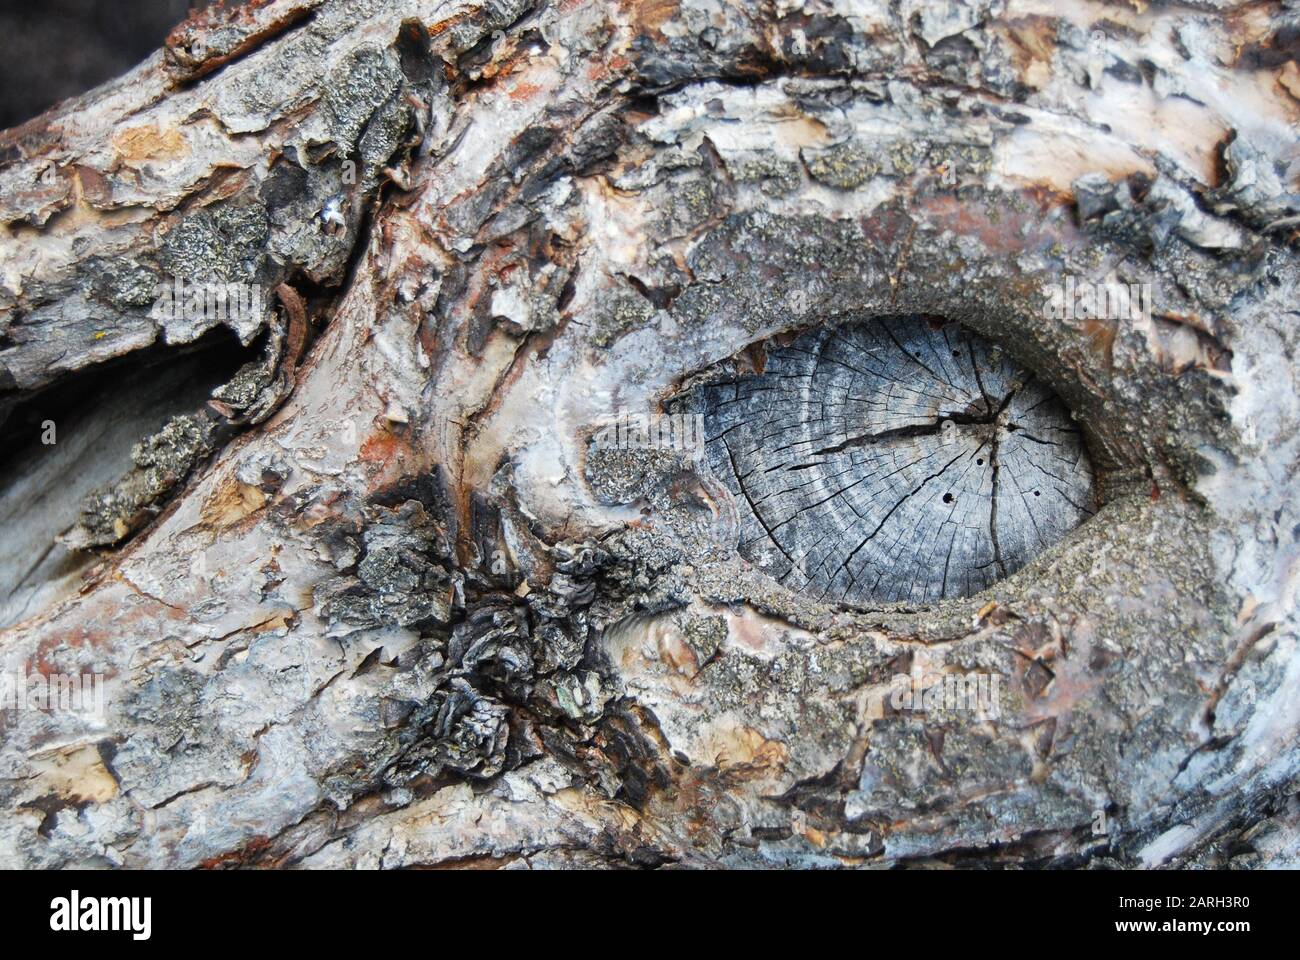 Alter Baumstamm mit einer Mulde, die dem Auge der lebenden Kreatur ähnelt Stockfoto